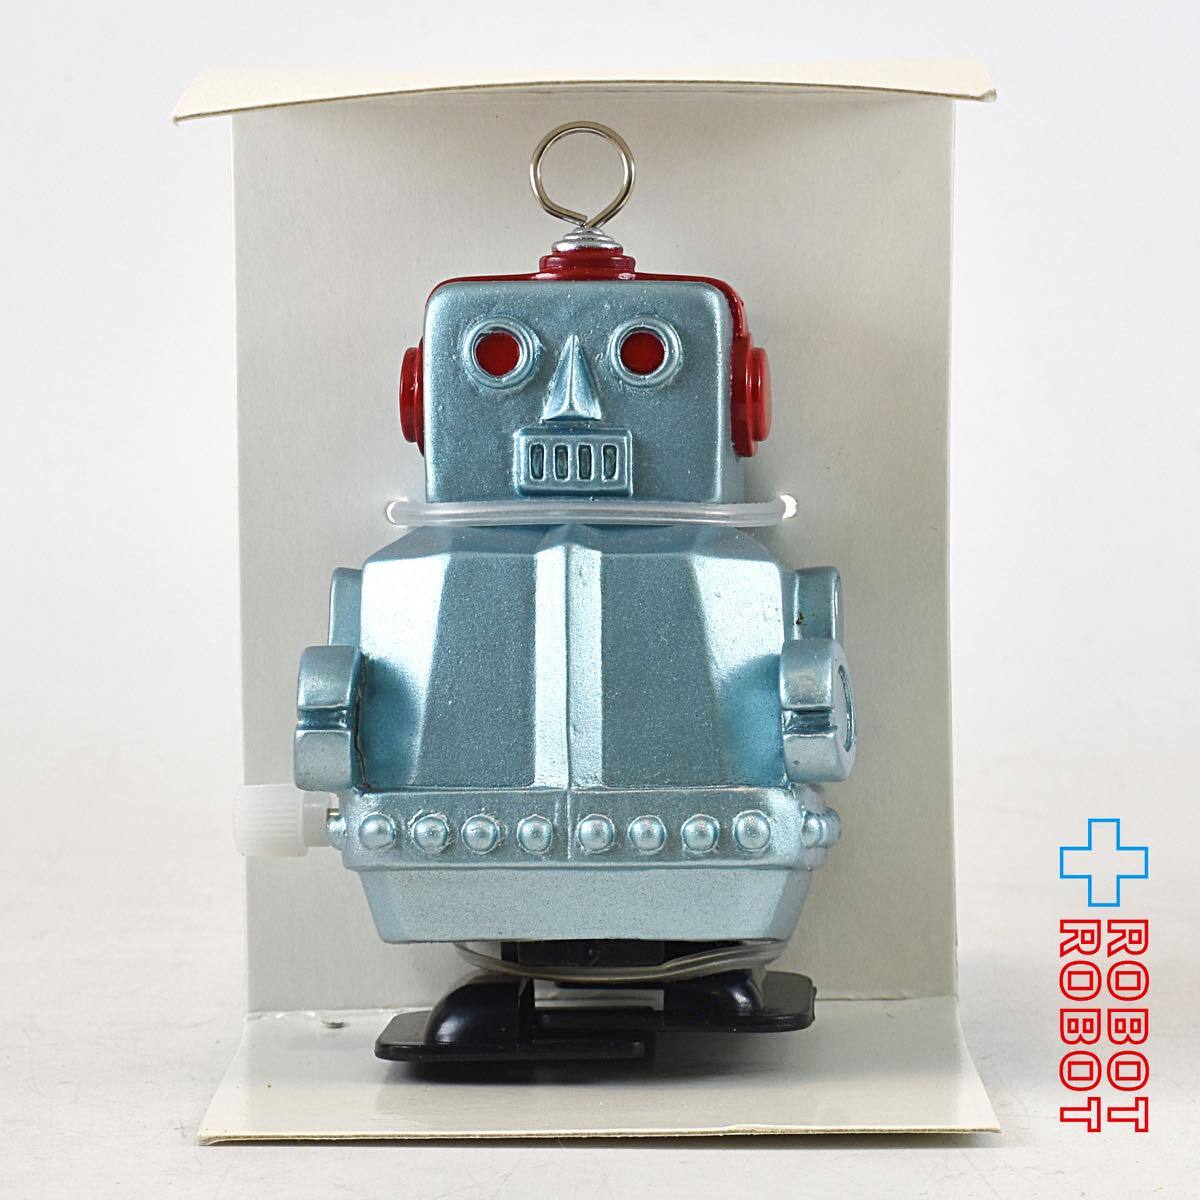 熊谷本店 ソフビ ウォーキングロボット CV-01S-blu リミテッドエディション